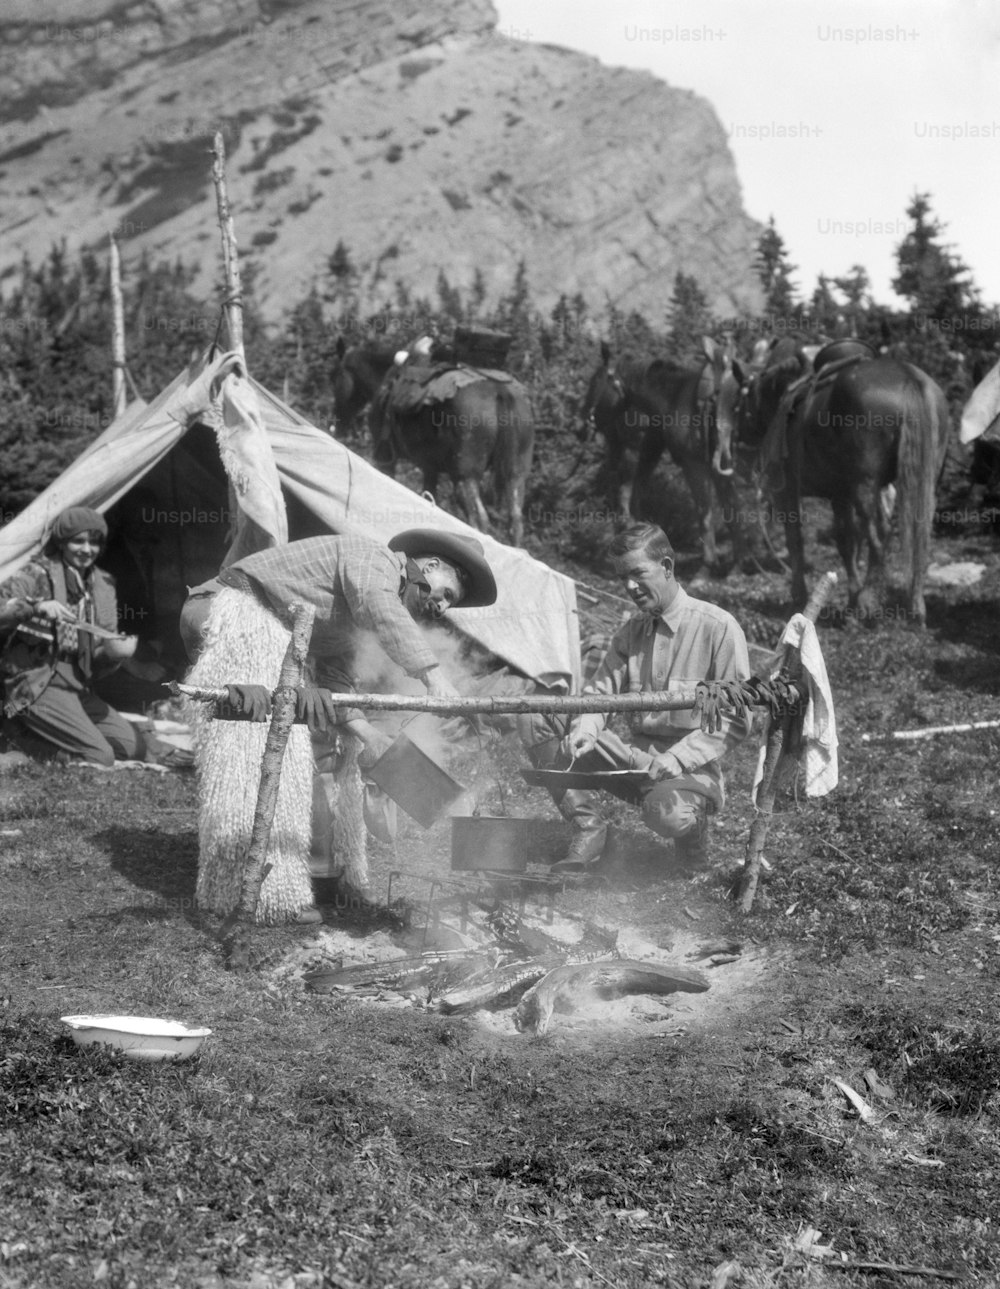 ESTADOS UNIDOS - ALREDEDOR DE 1930: Los campistas vaqueros observan a un jinete cocinando sobre el fuego.